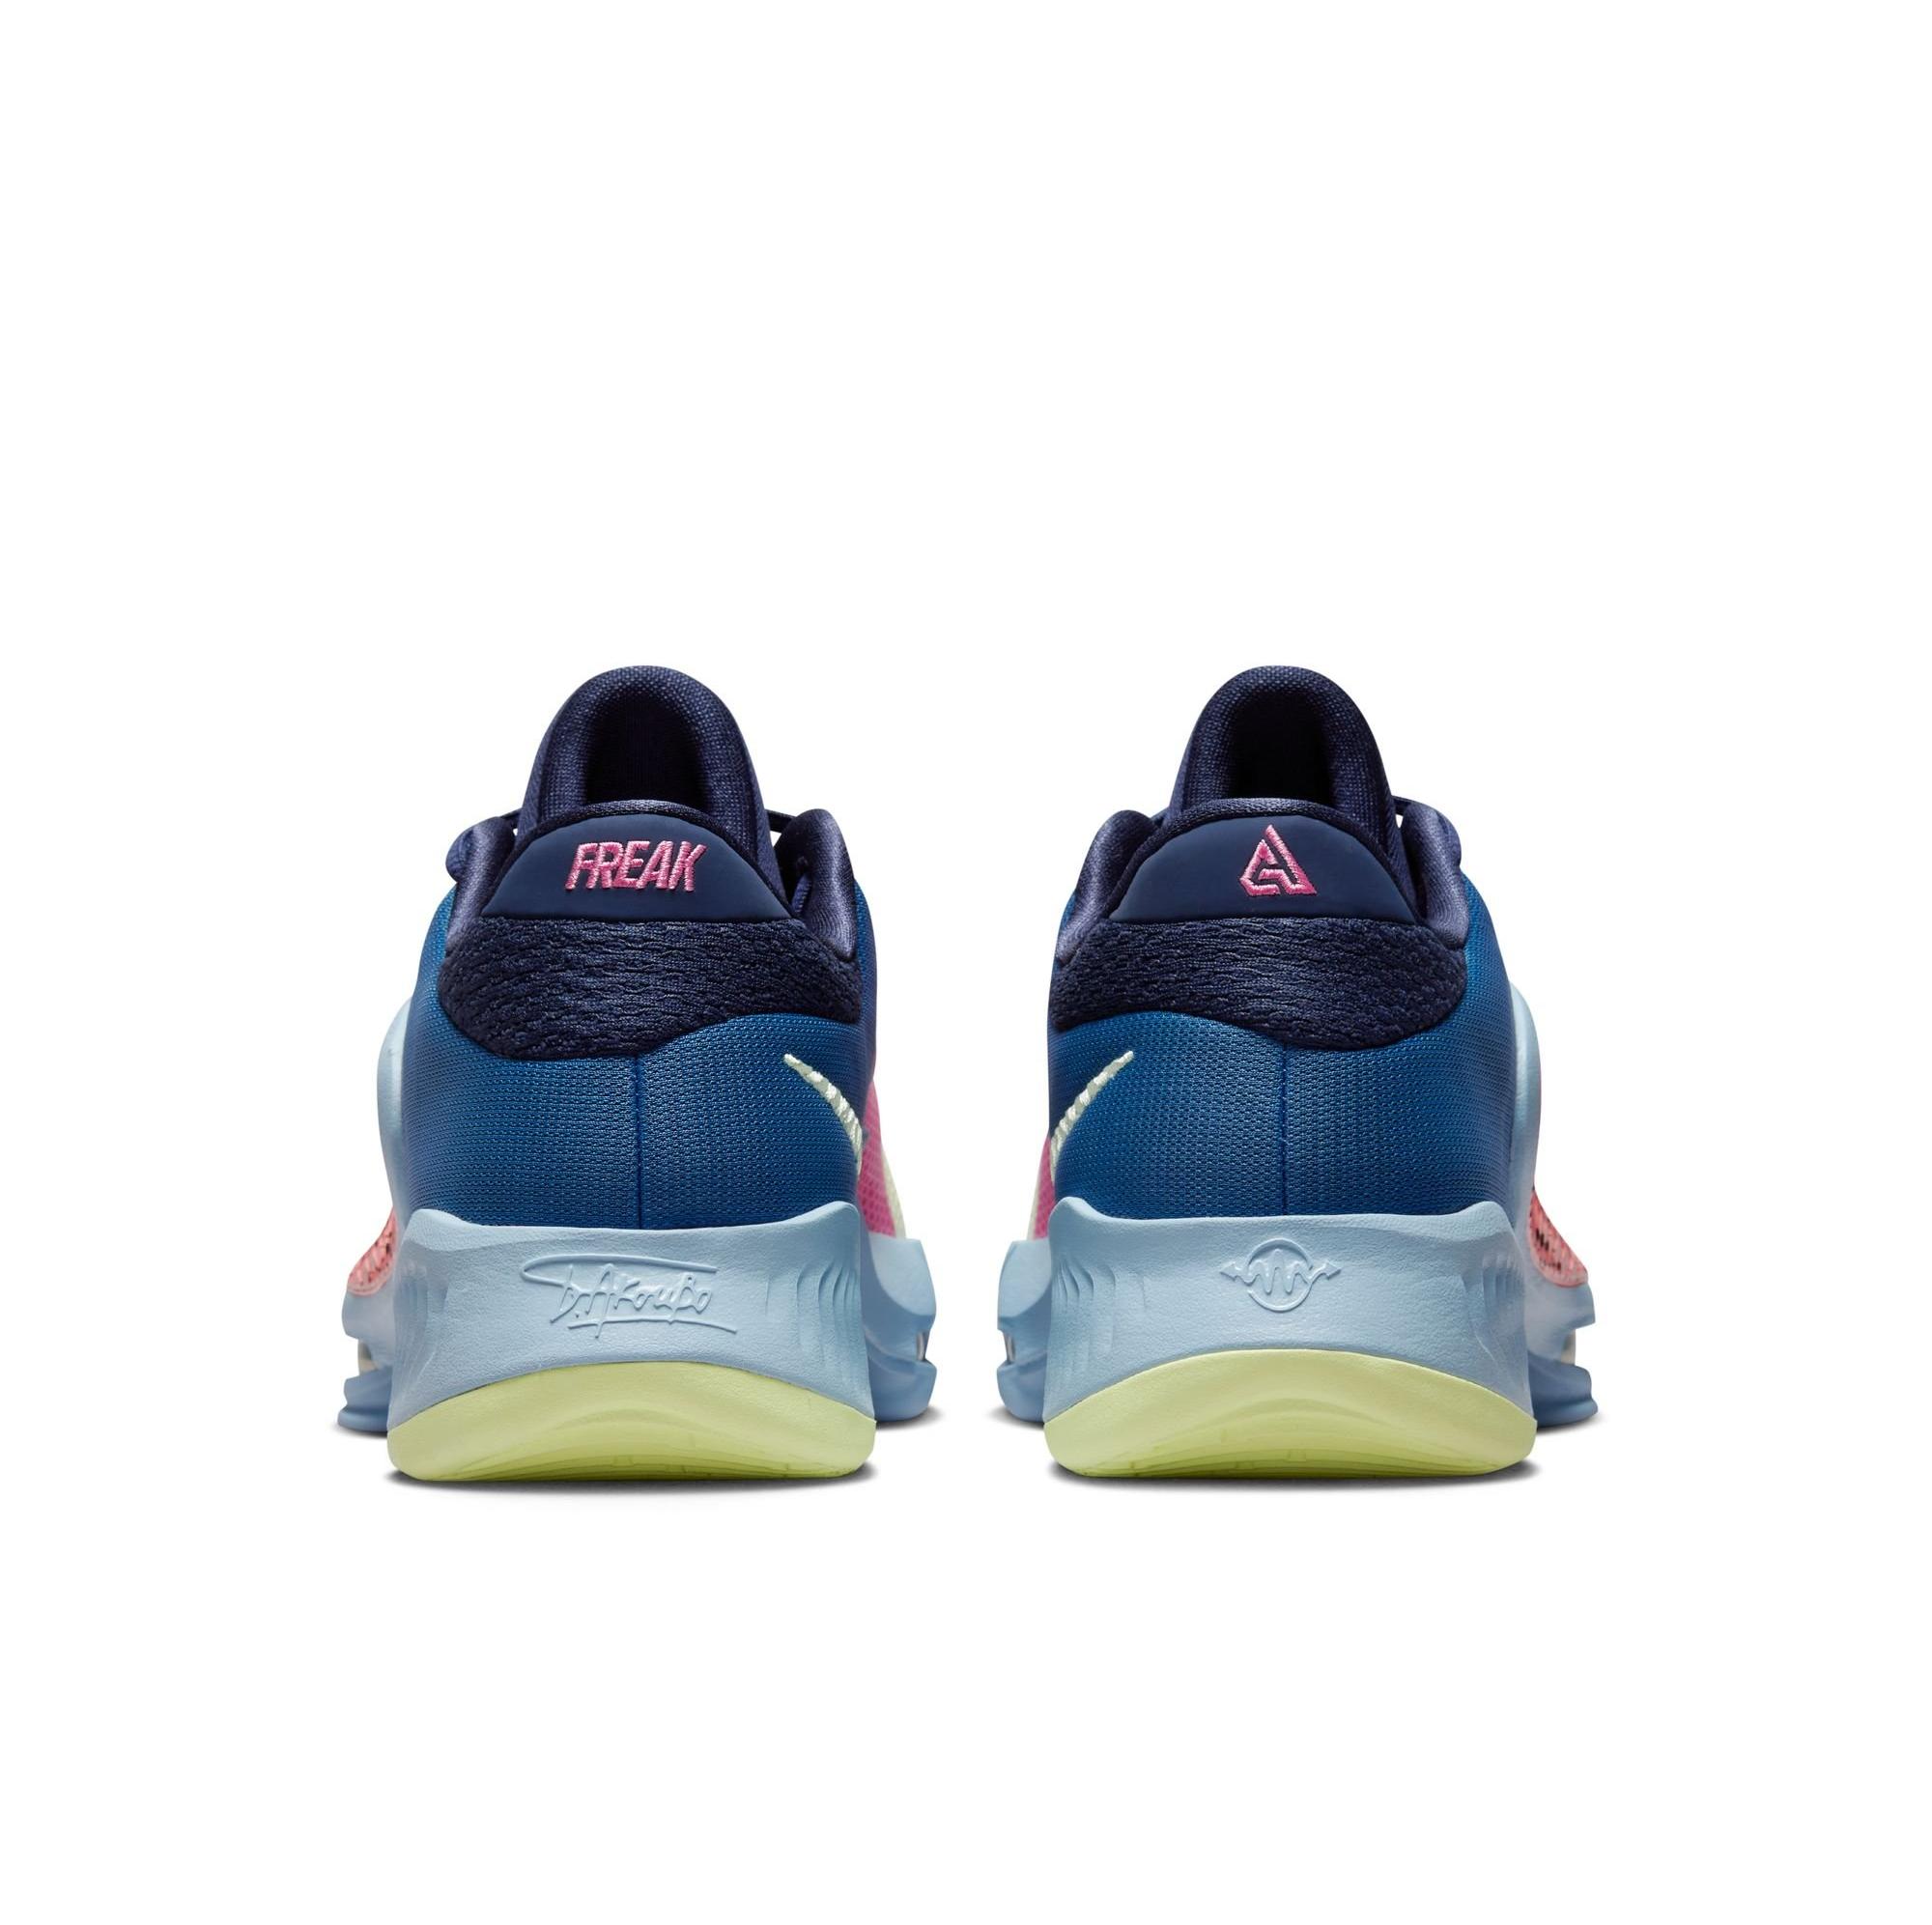 Nike Air Max 270 Flyknit (Blue/Yellow) - Sneaker Freaker